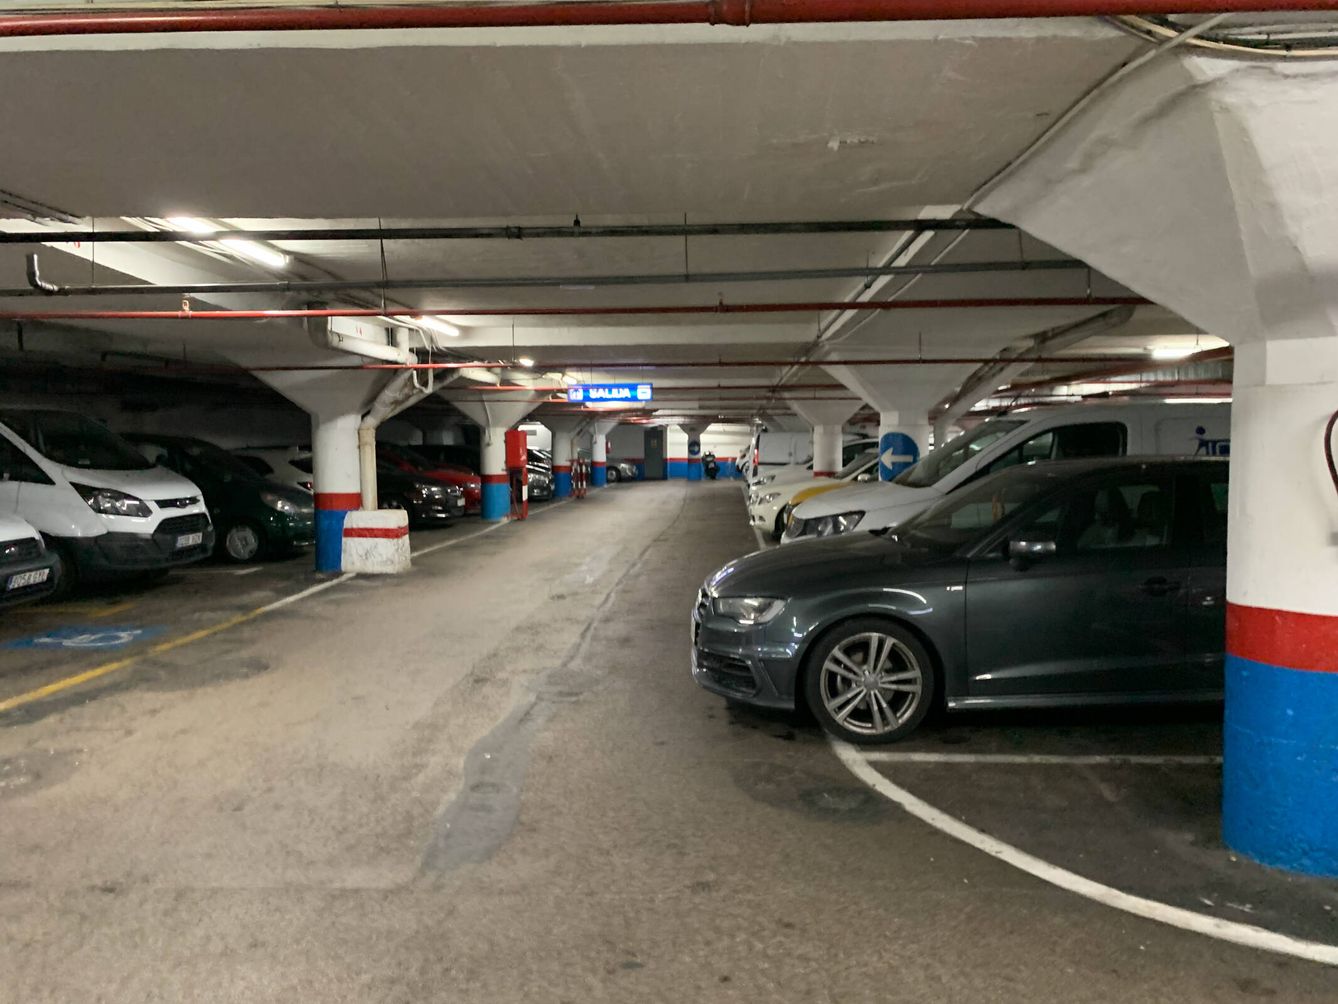 En el 'parking' de La Cebada, los coches superan el límite de las plazas (G. C.)